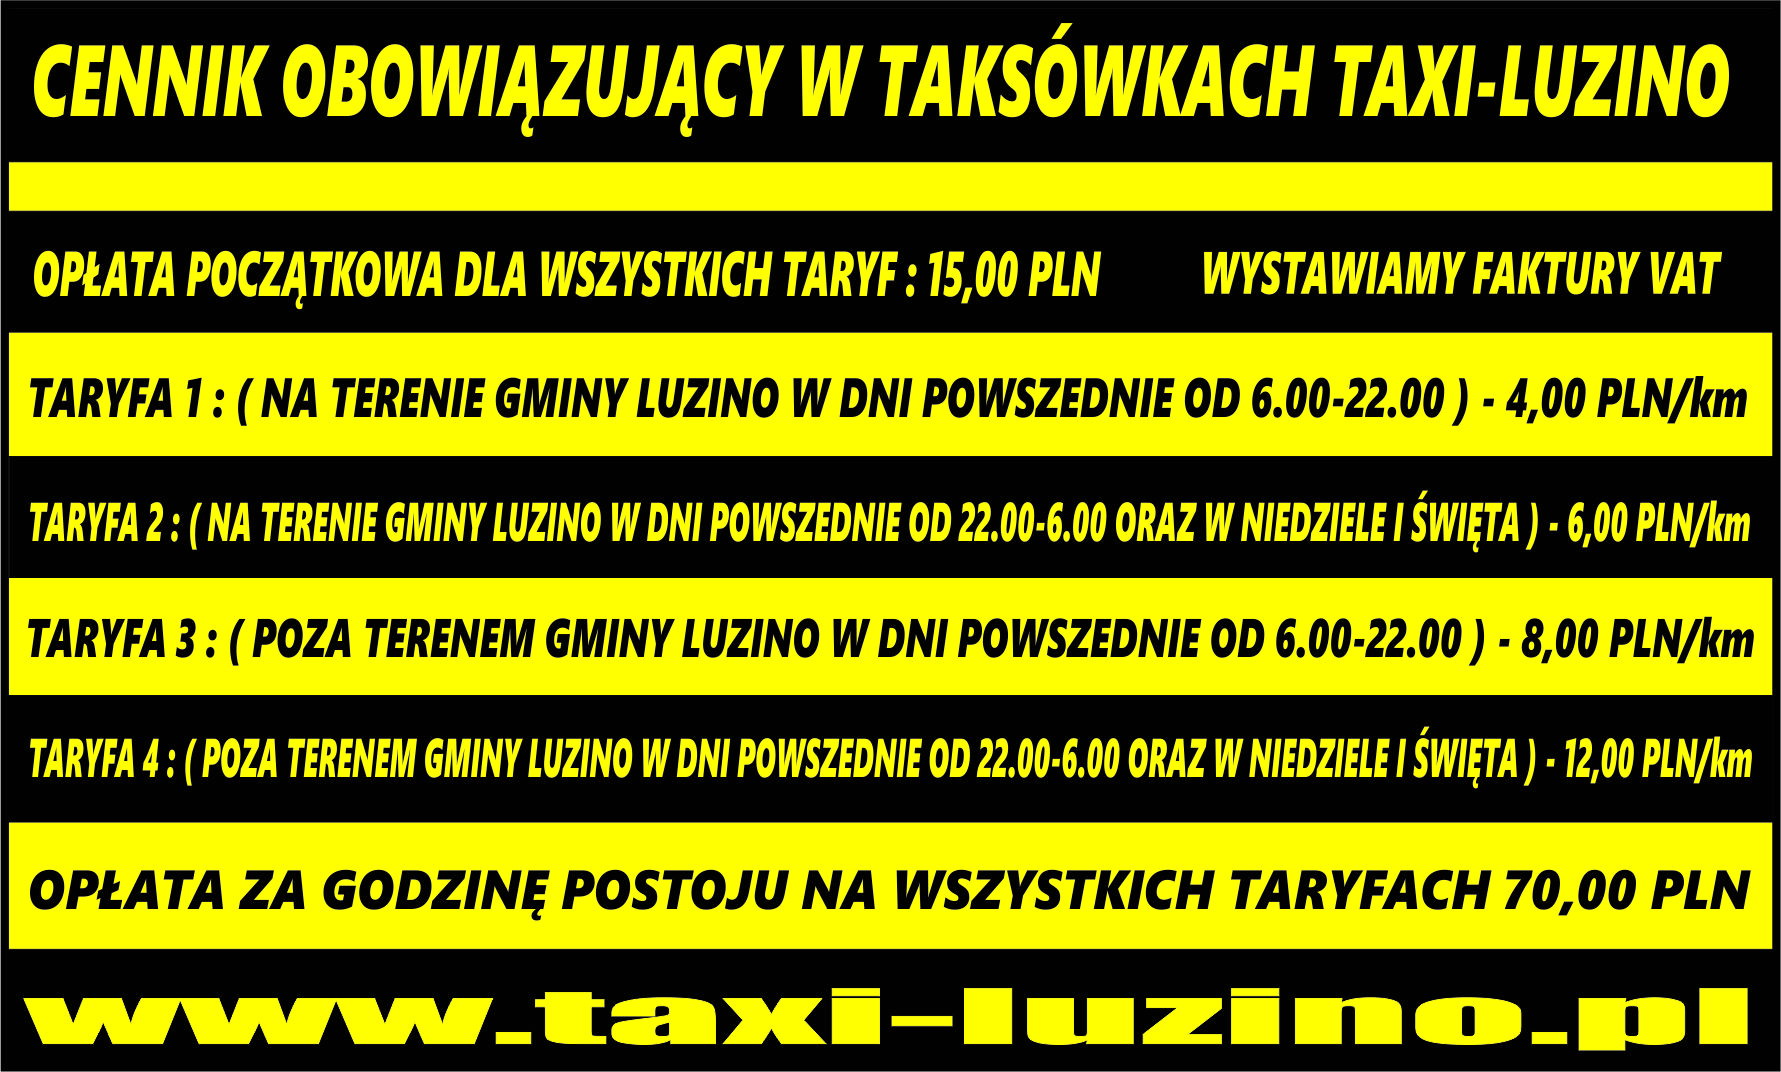 bus taxi, taxi Luzino, taxi 

Kębłowo, taxi Kochanowo, taxi Wyszecino, taxi Milwino, taxi Sychowo, taxi Barłomino, taxi Zelewo, taxi Zielnowo, taxi D

ąbrówka, taxi Robakowo, taxi Tępcz, taxi Strzebielino, taxi Gościcino, taxi Bożepole Małe, taxi Bożepole Wielkie